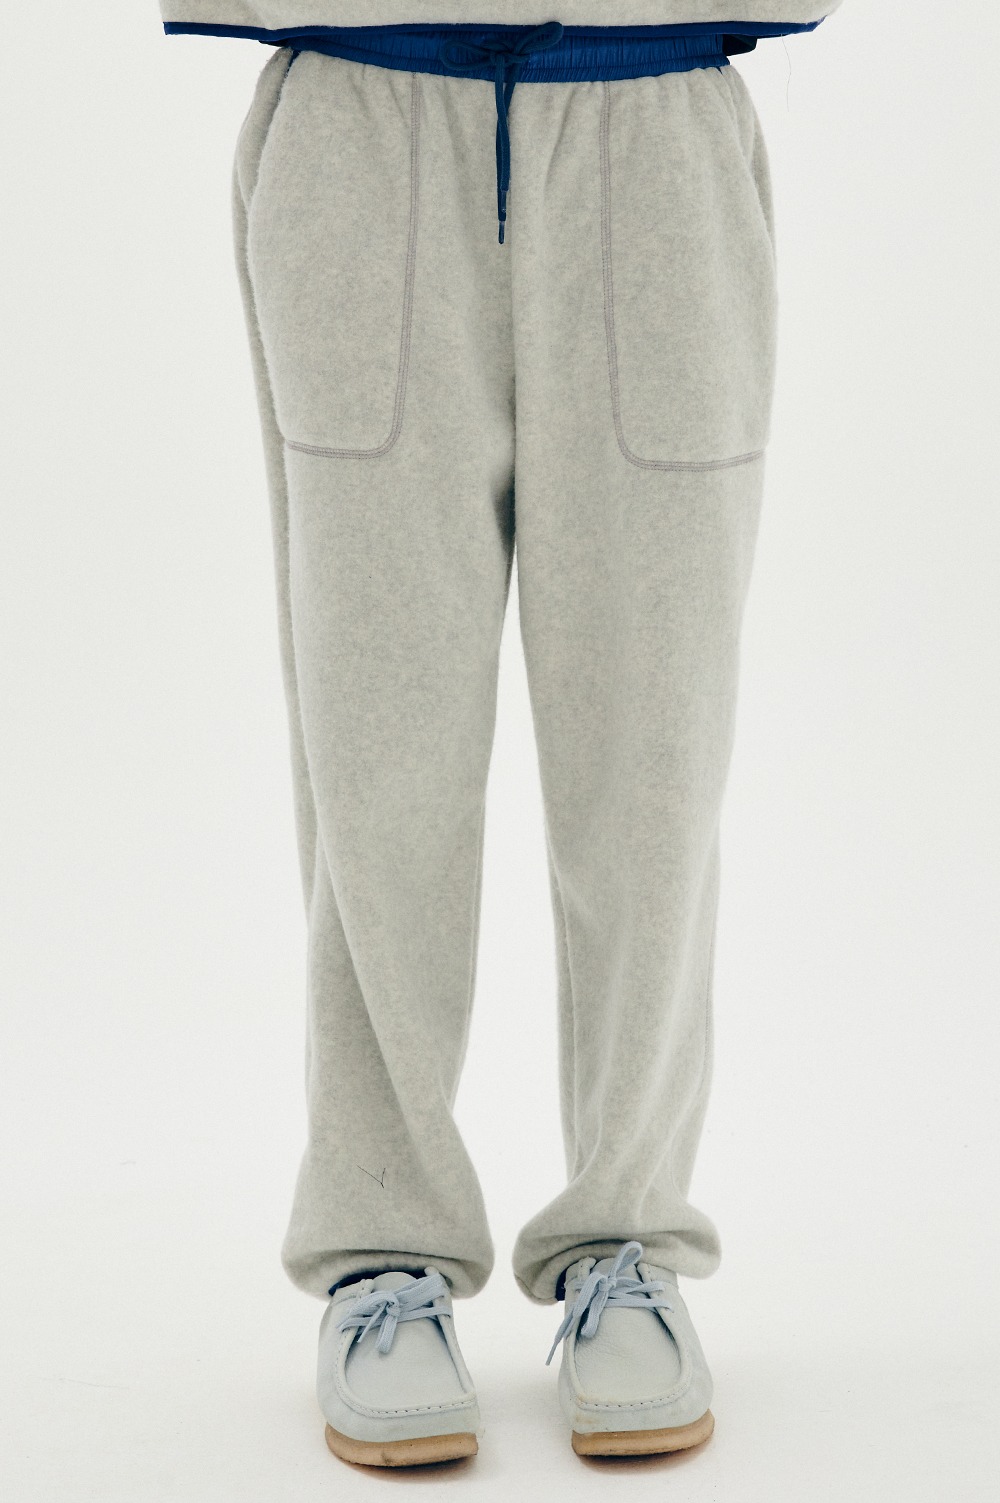 clove - [22FW clove] Colored Fleece Pants_Women (Light Grey)